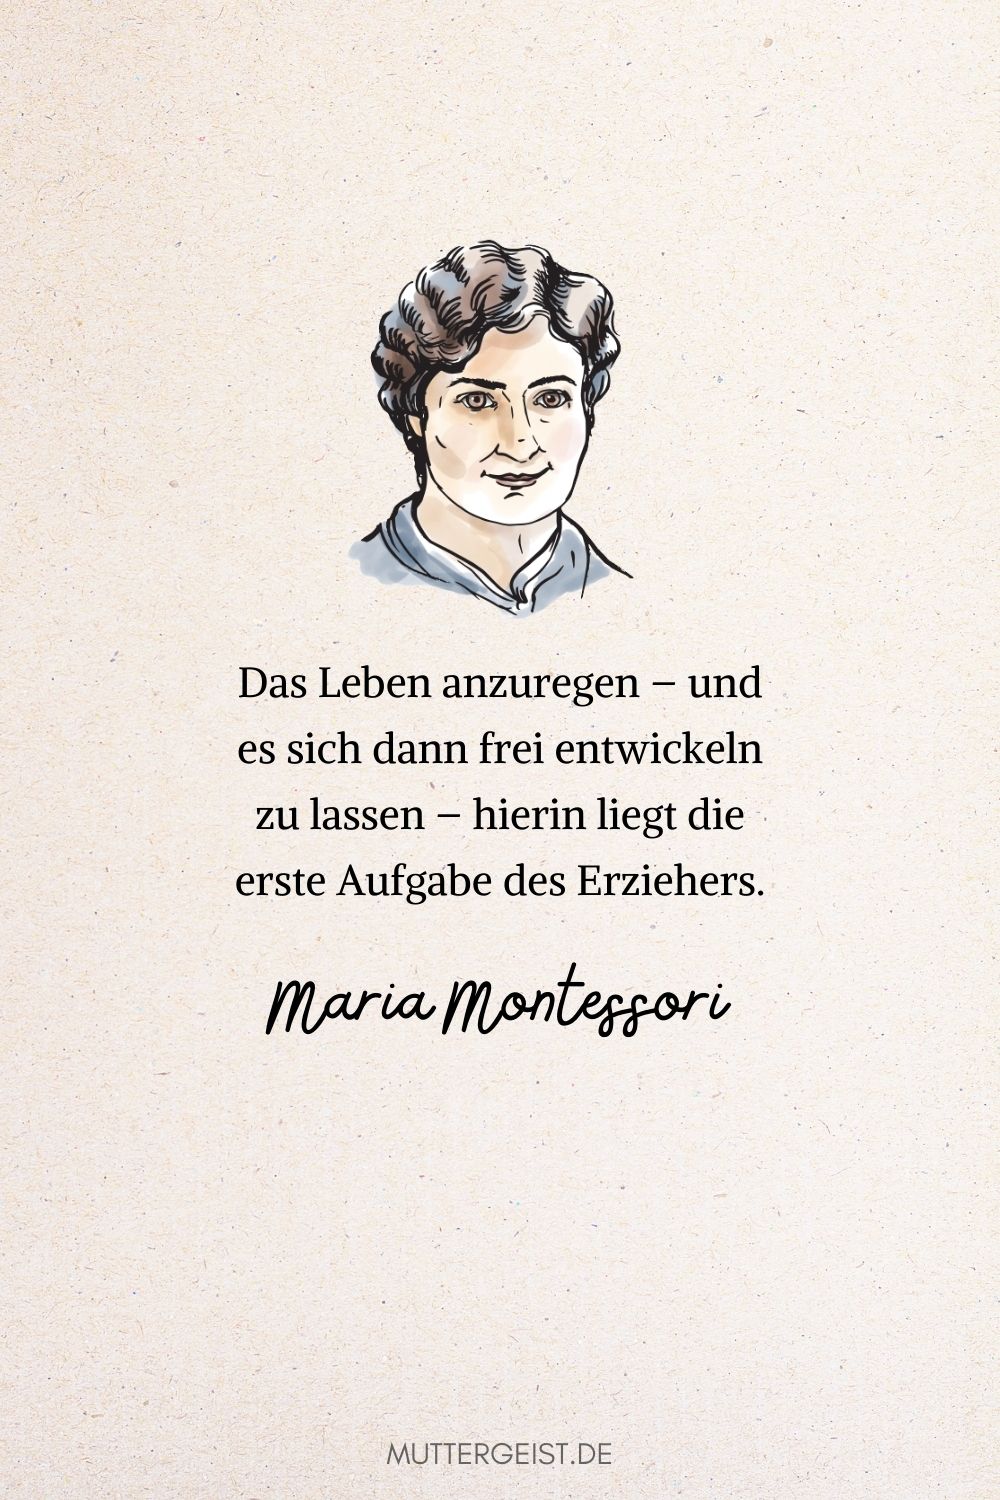 Zitat von Maria Montessori über kindliche Entwicklung und Erziehung